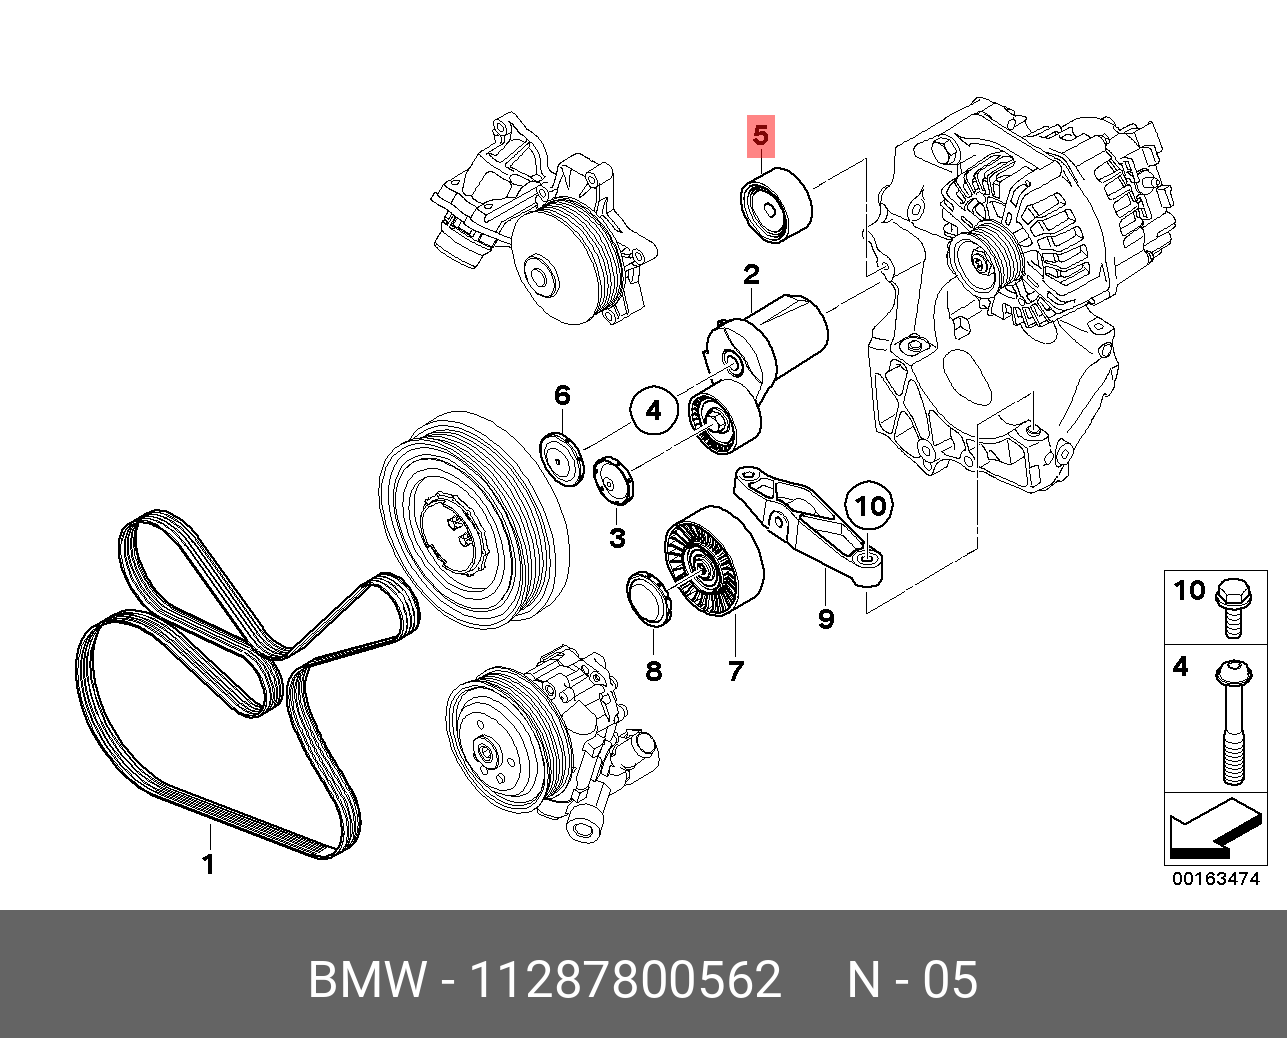 Ролик промежуточный навесного оборудования - BMW 11 28 7 800 562